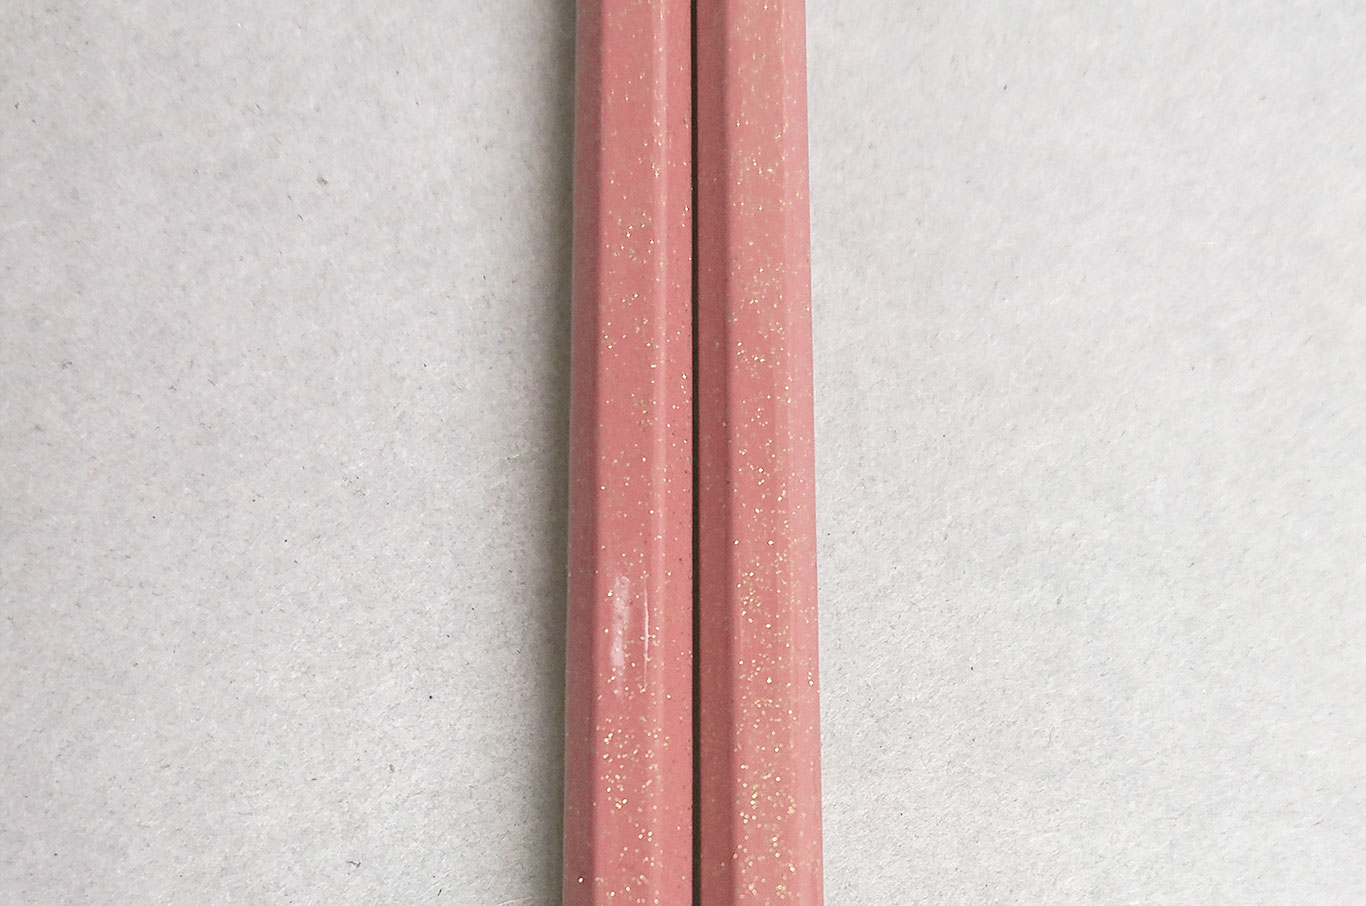 桜箸